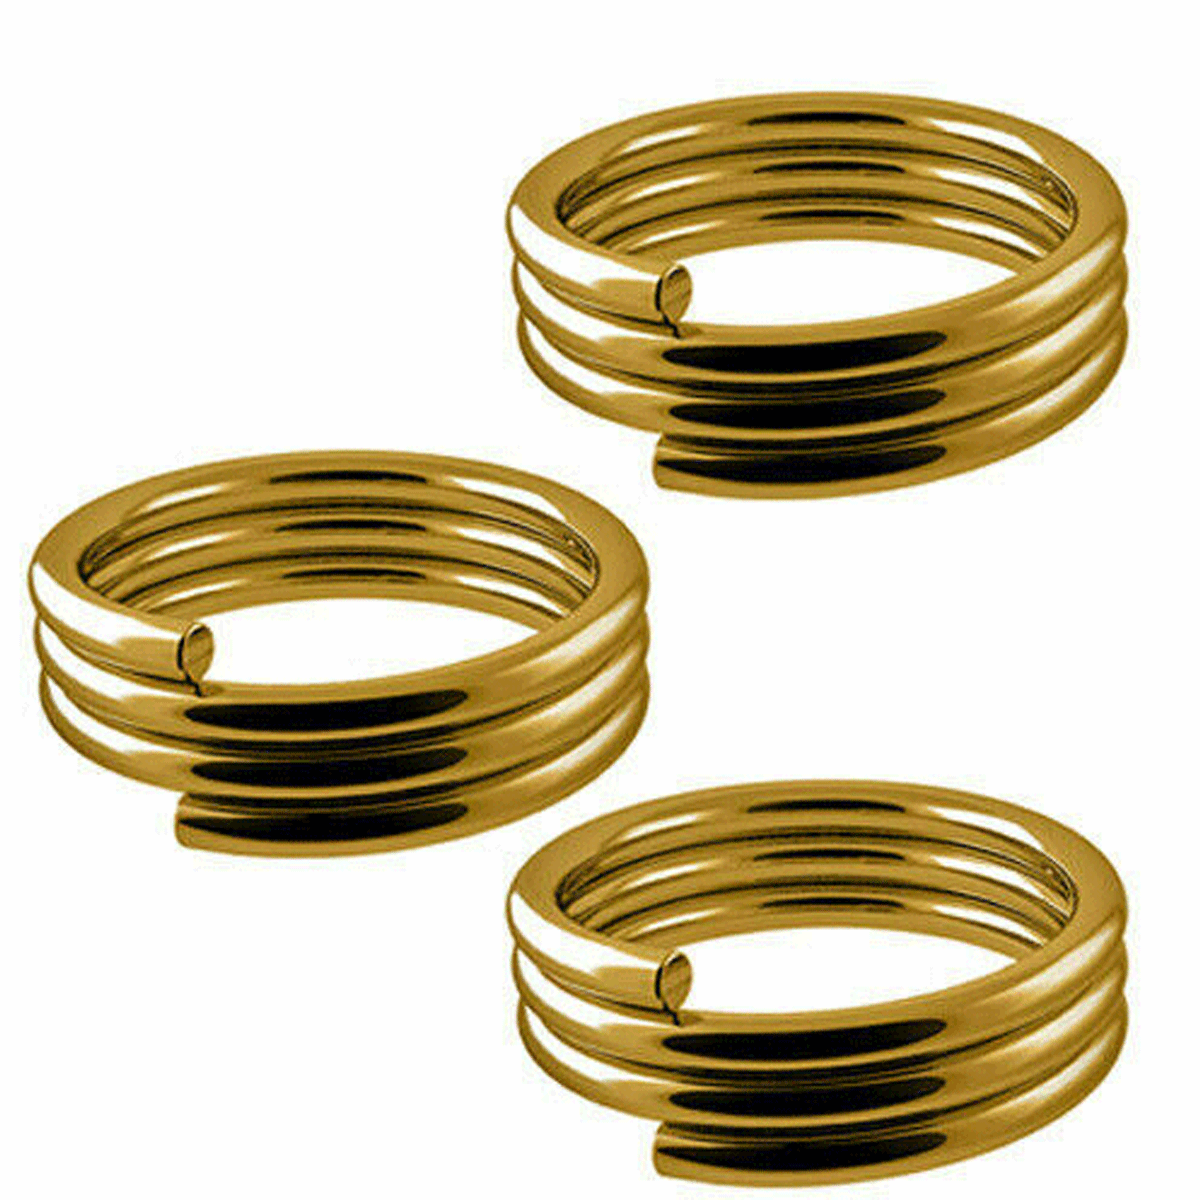 Designa Gold Spring Pack - 10 sets (30 Springs)